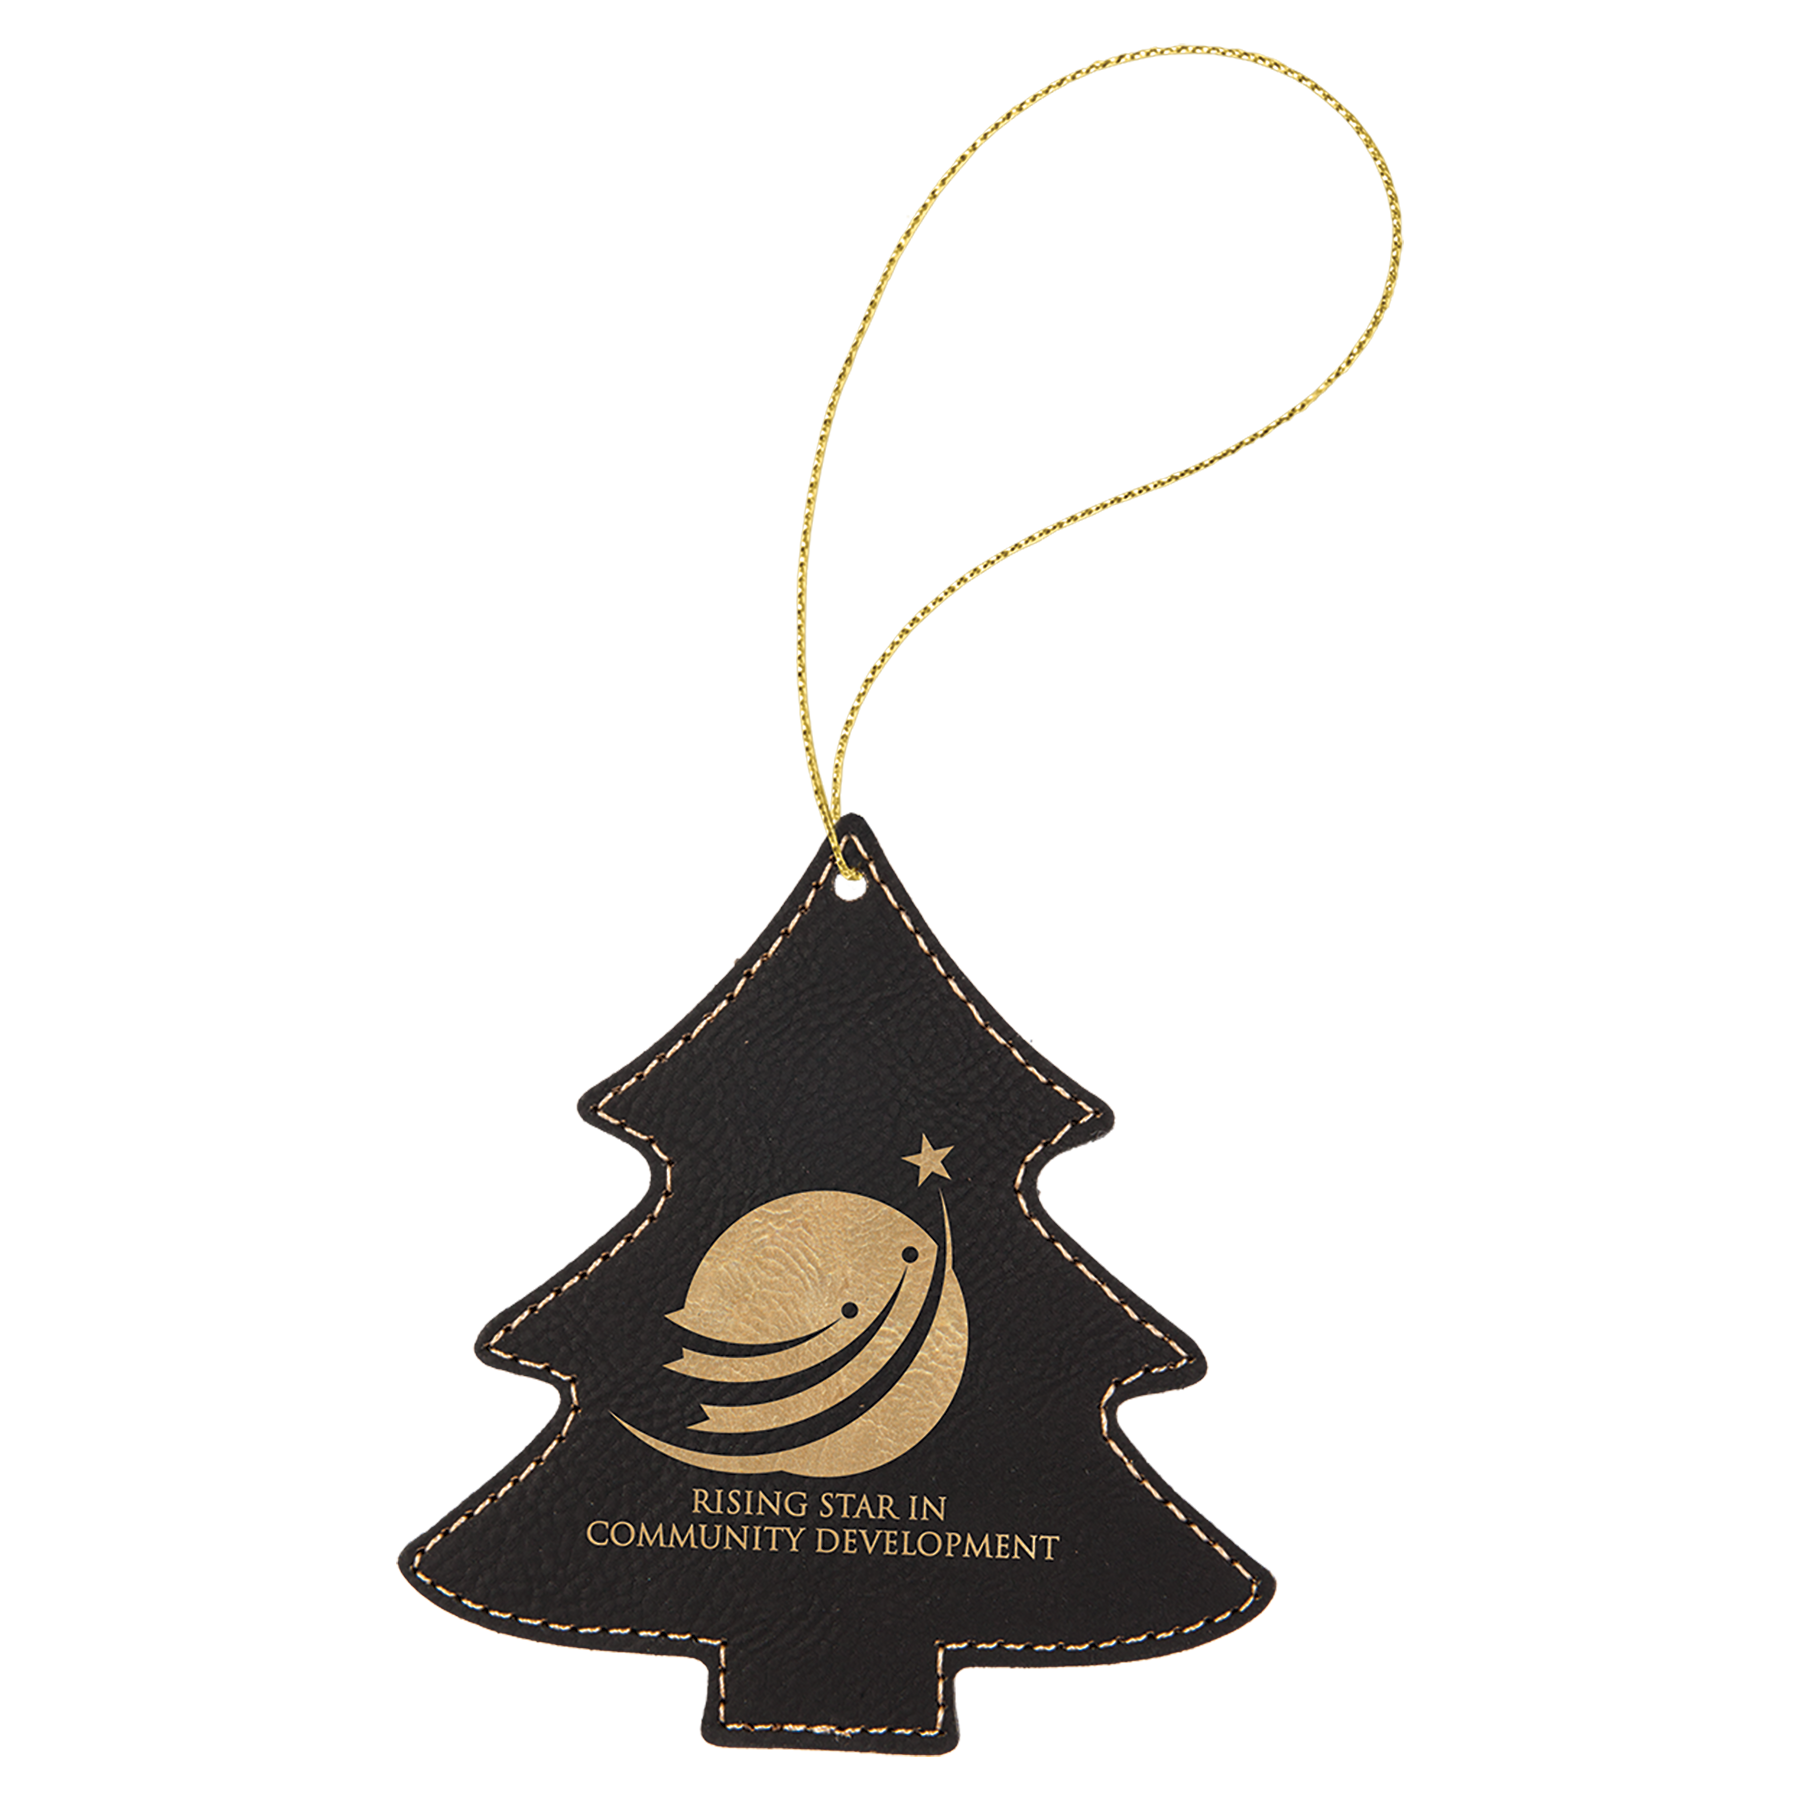 Leatherette Tree Ornament